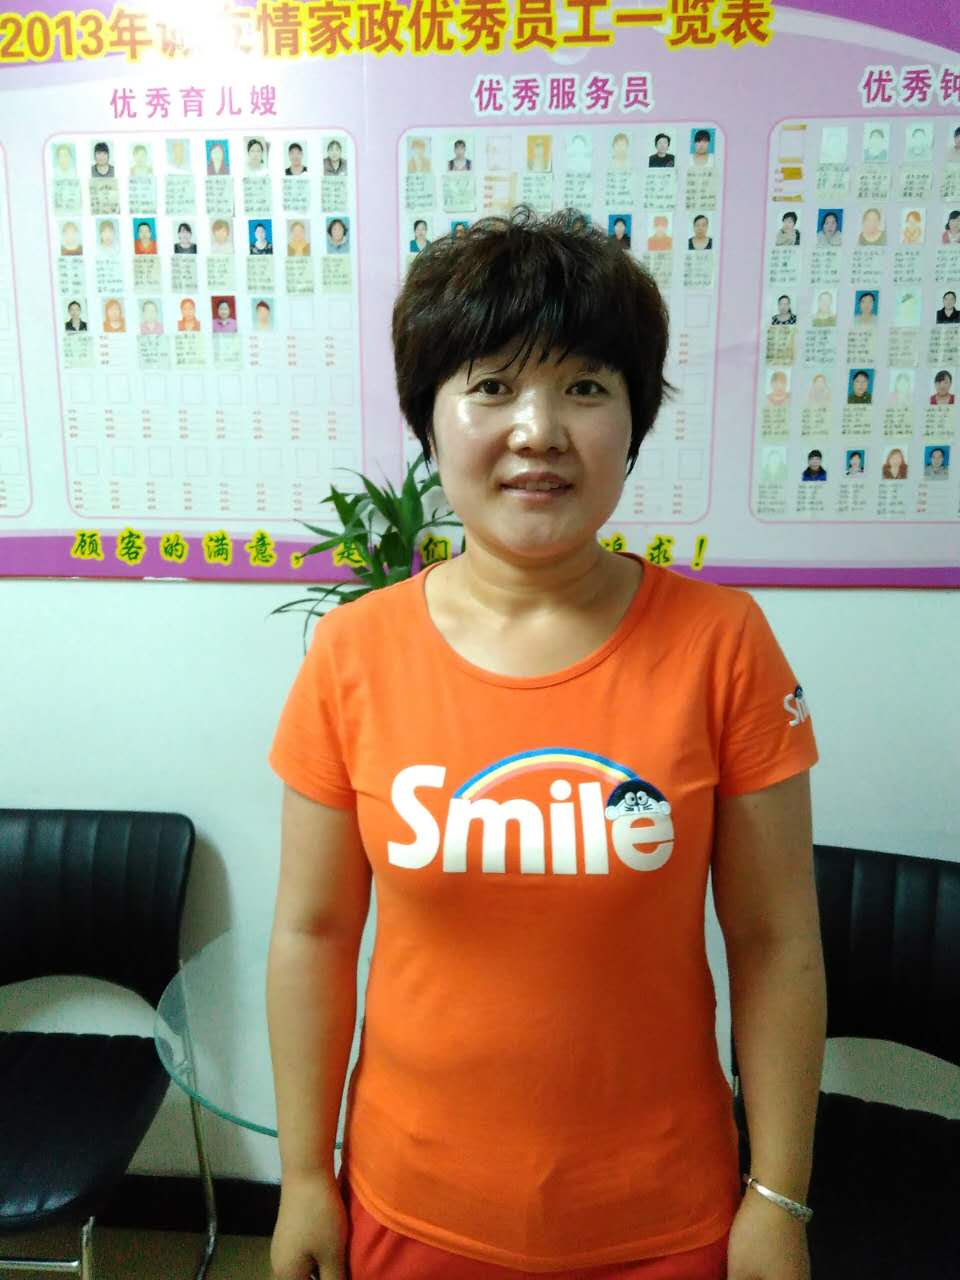 李阿姨 40岁 甘肃 庆阳 找做饭家务 带孩子工作